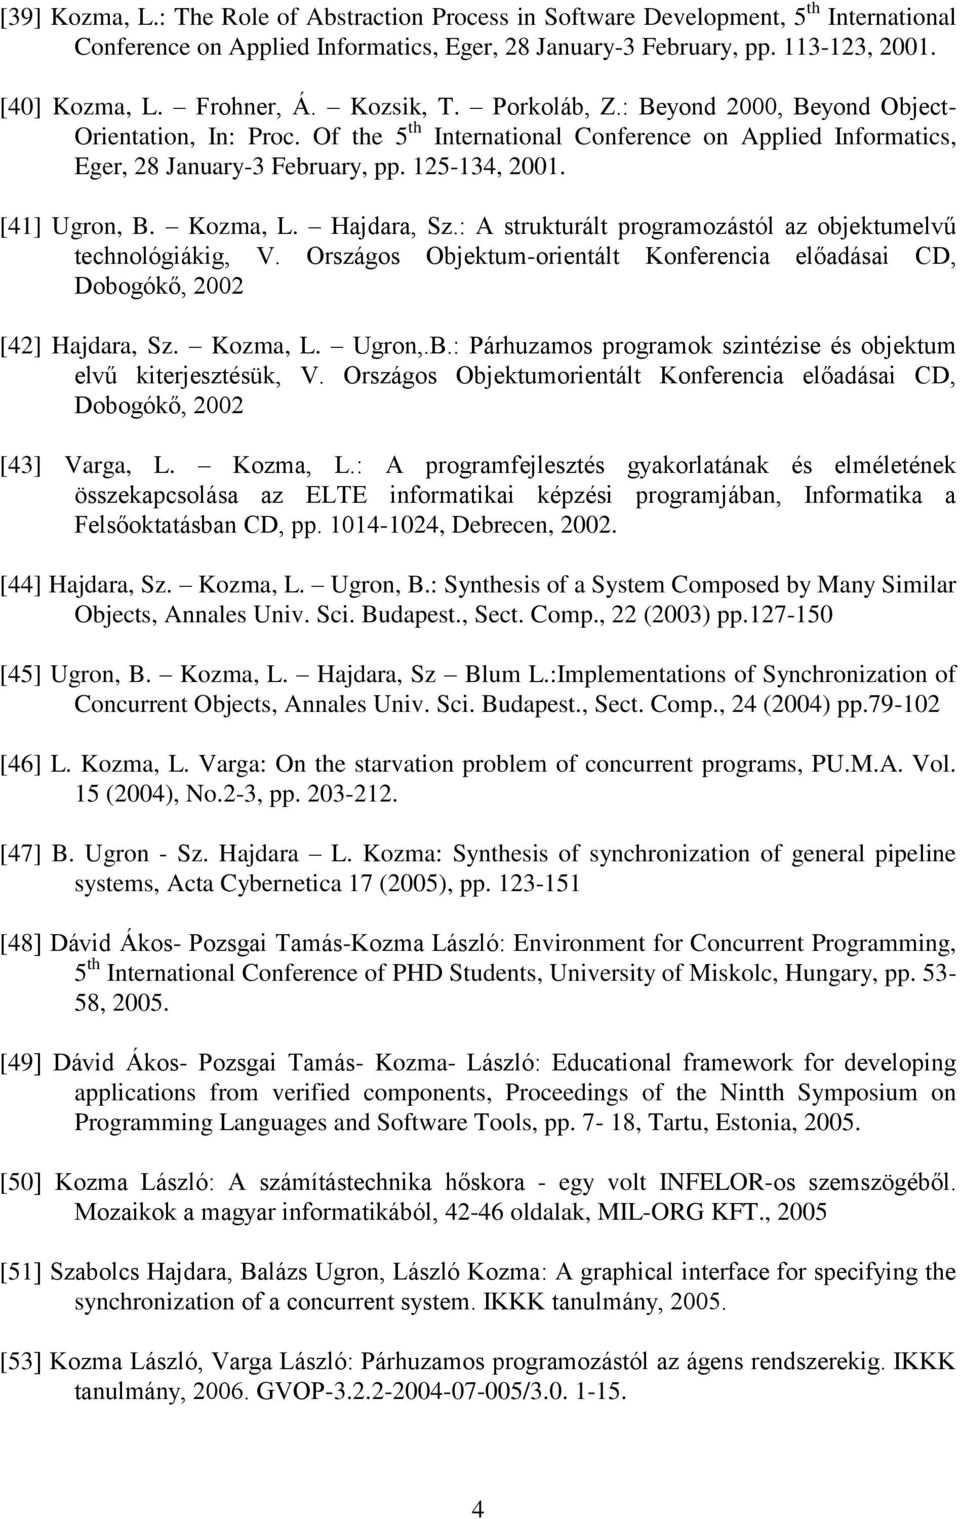 [41] Ugron, B. Kozma, L. Hajdara, Sz.: A strukturált programozástól az objektumelvű technológiákig, V. Országos Objektum-orientált Konferencia előadásai CD, Dobogókő, 2002 [42] Hajdara, Sz. Kozma, L. Ugron,.B.: Párhuzamos programok szintézise és objektum elvű kiterjesztésük, V.